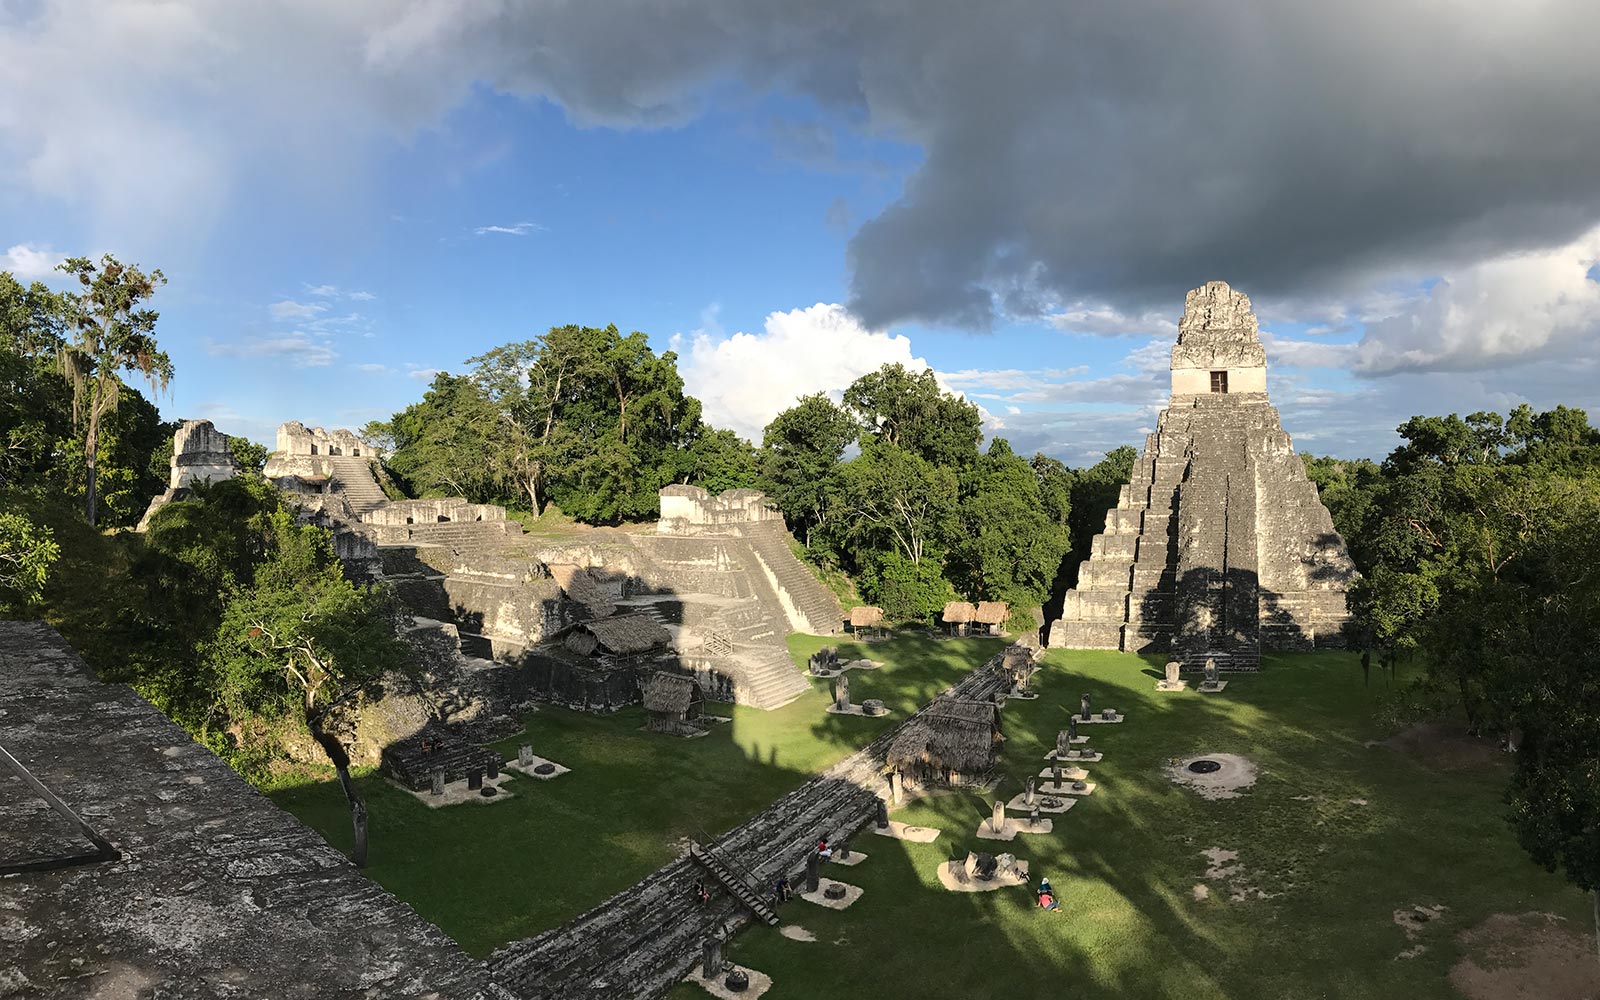 Mayan ruins among trees in Tikal, Guatemala. A dislocated shoulder & Tikal Ruins